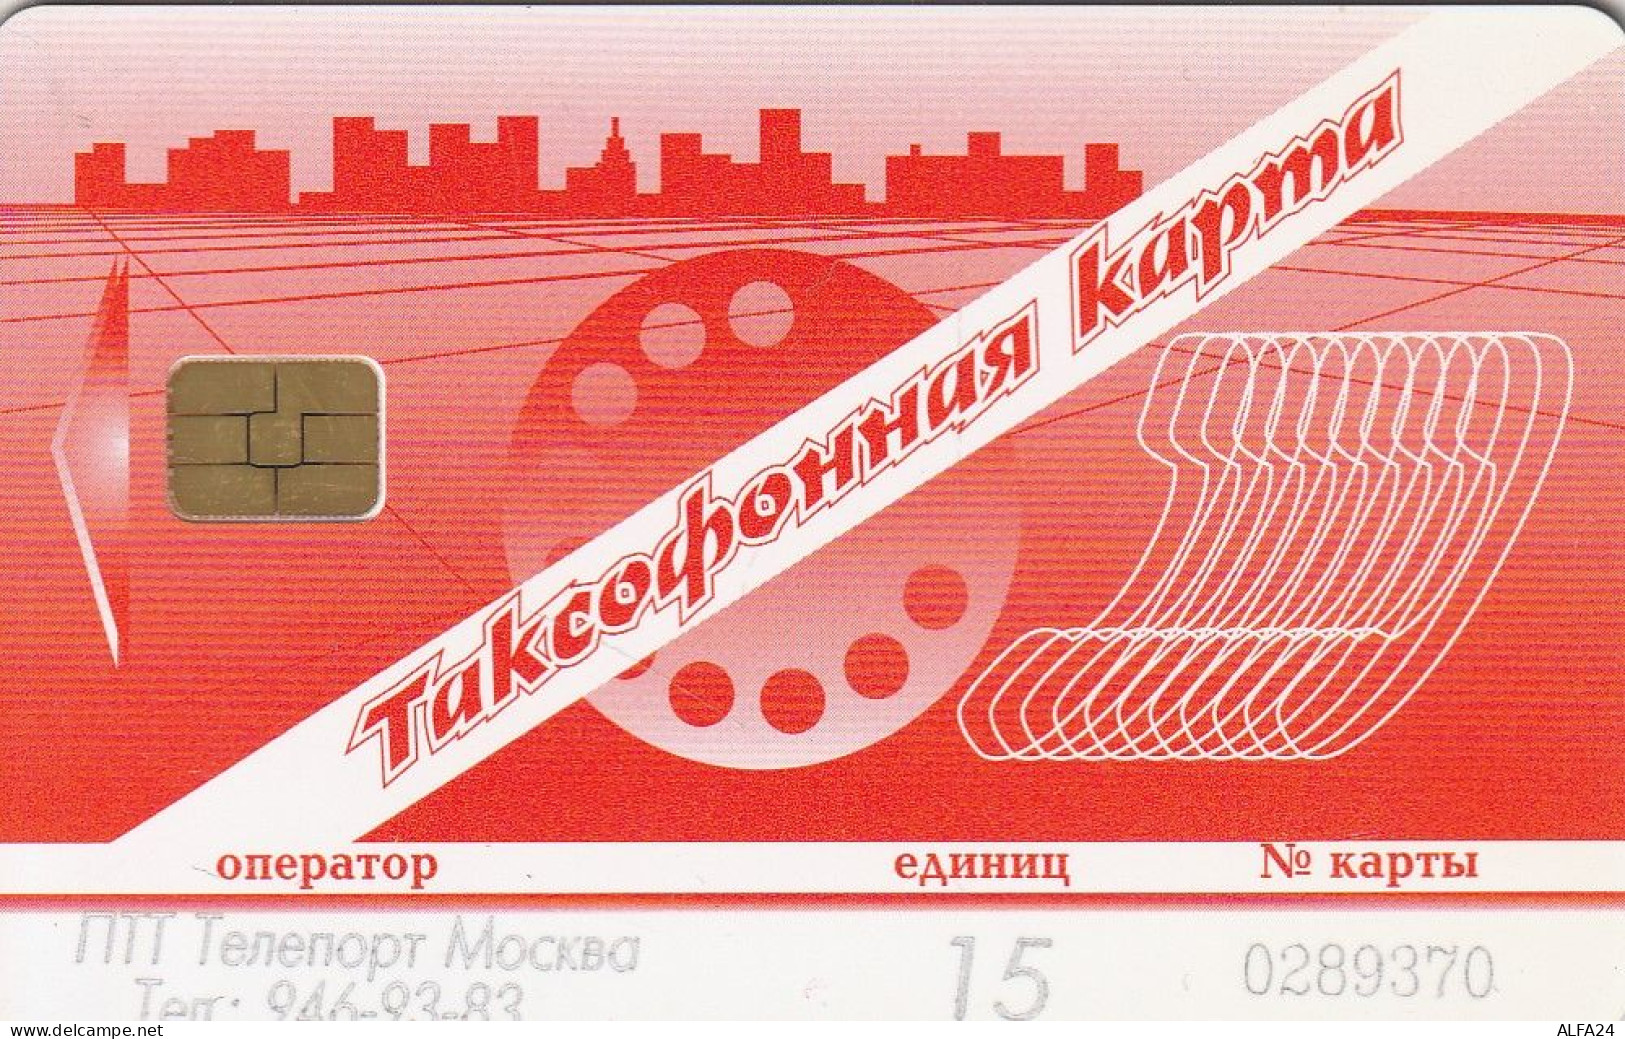 PHONE CARD RUSSIA CentrTelecom And Moscow Region (E67.26.7 - Russland